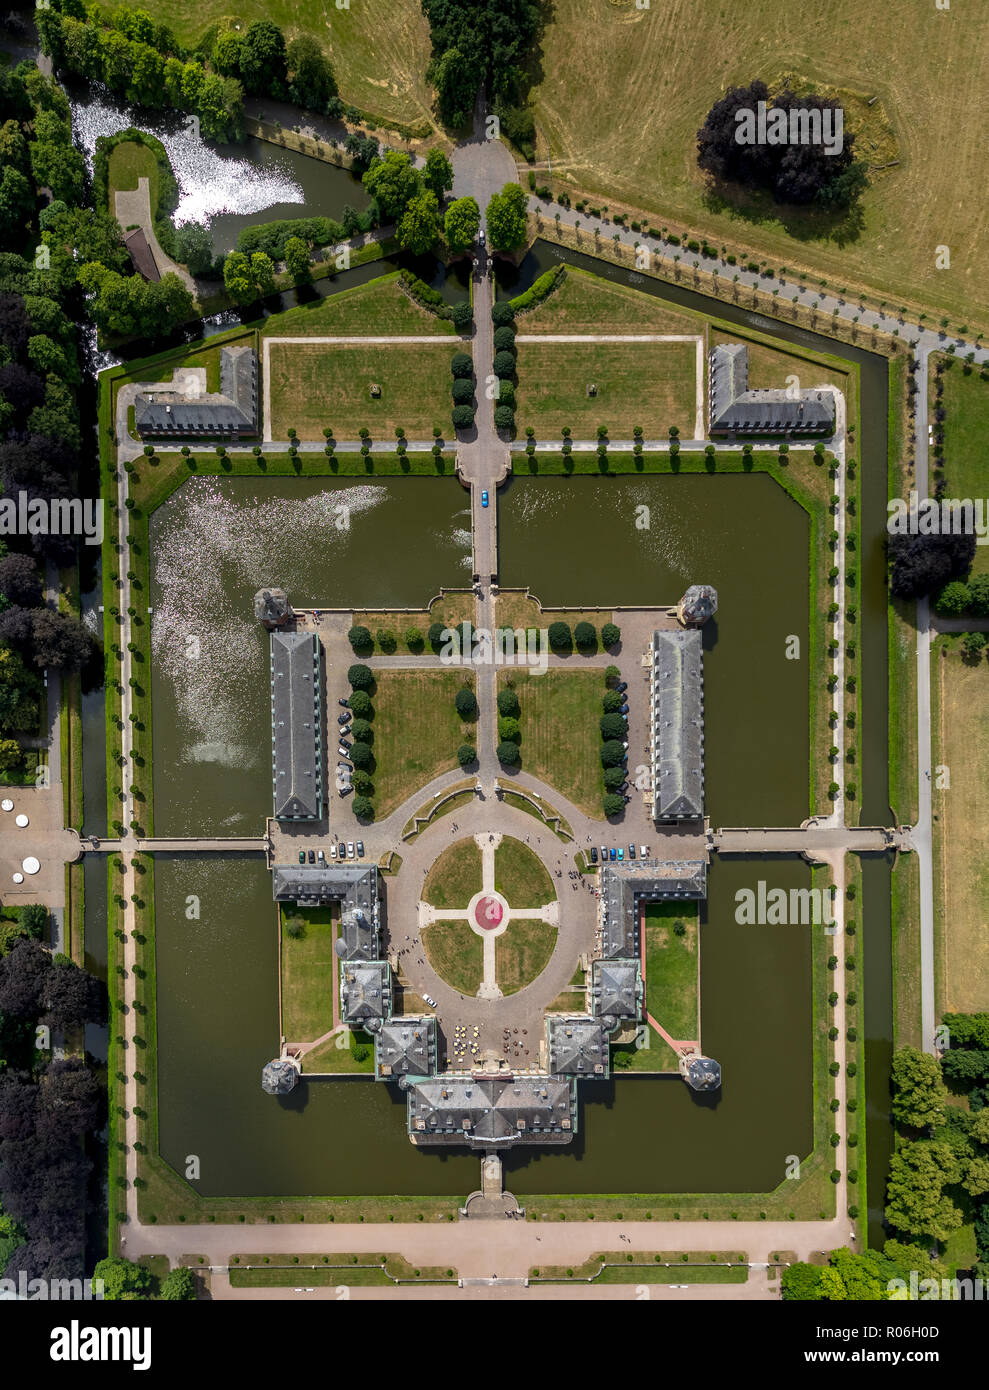 Vue aérienne, château d'eau, moaded château, Château baroque du Münsterland Nordkirchen, jardin baroque, églises, de l'Allemagne du nord, au nord de la Ruhr Rh Banque D'Images